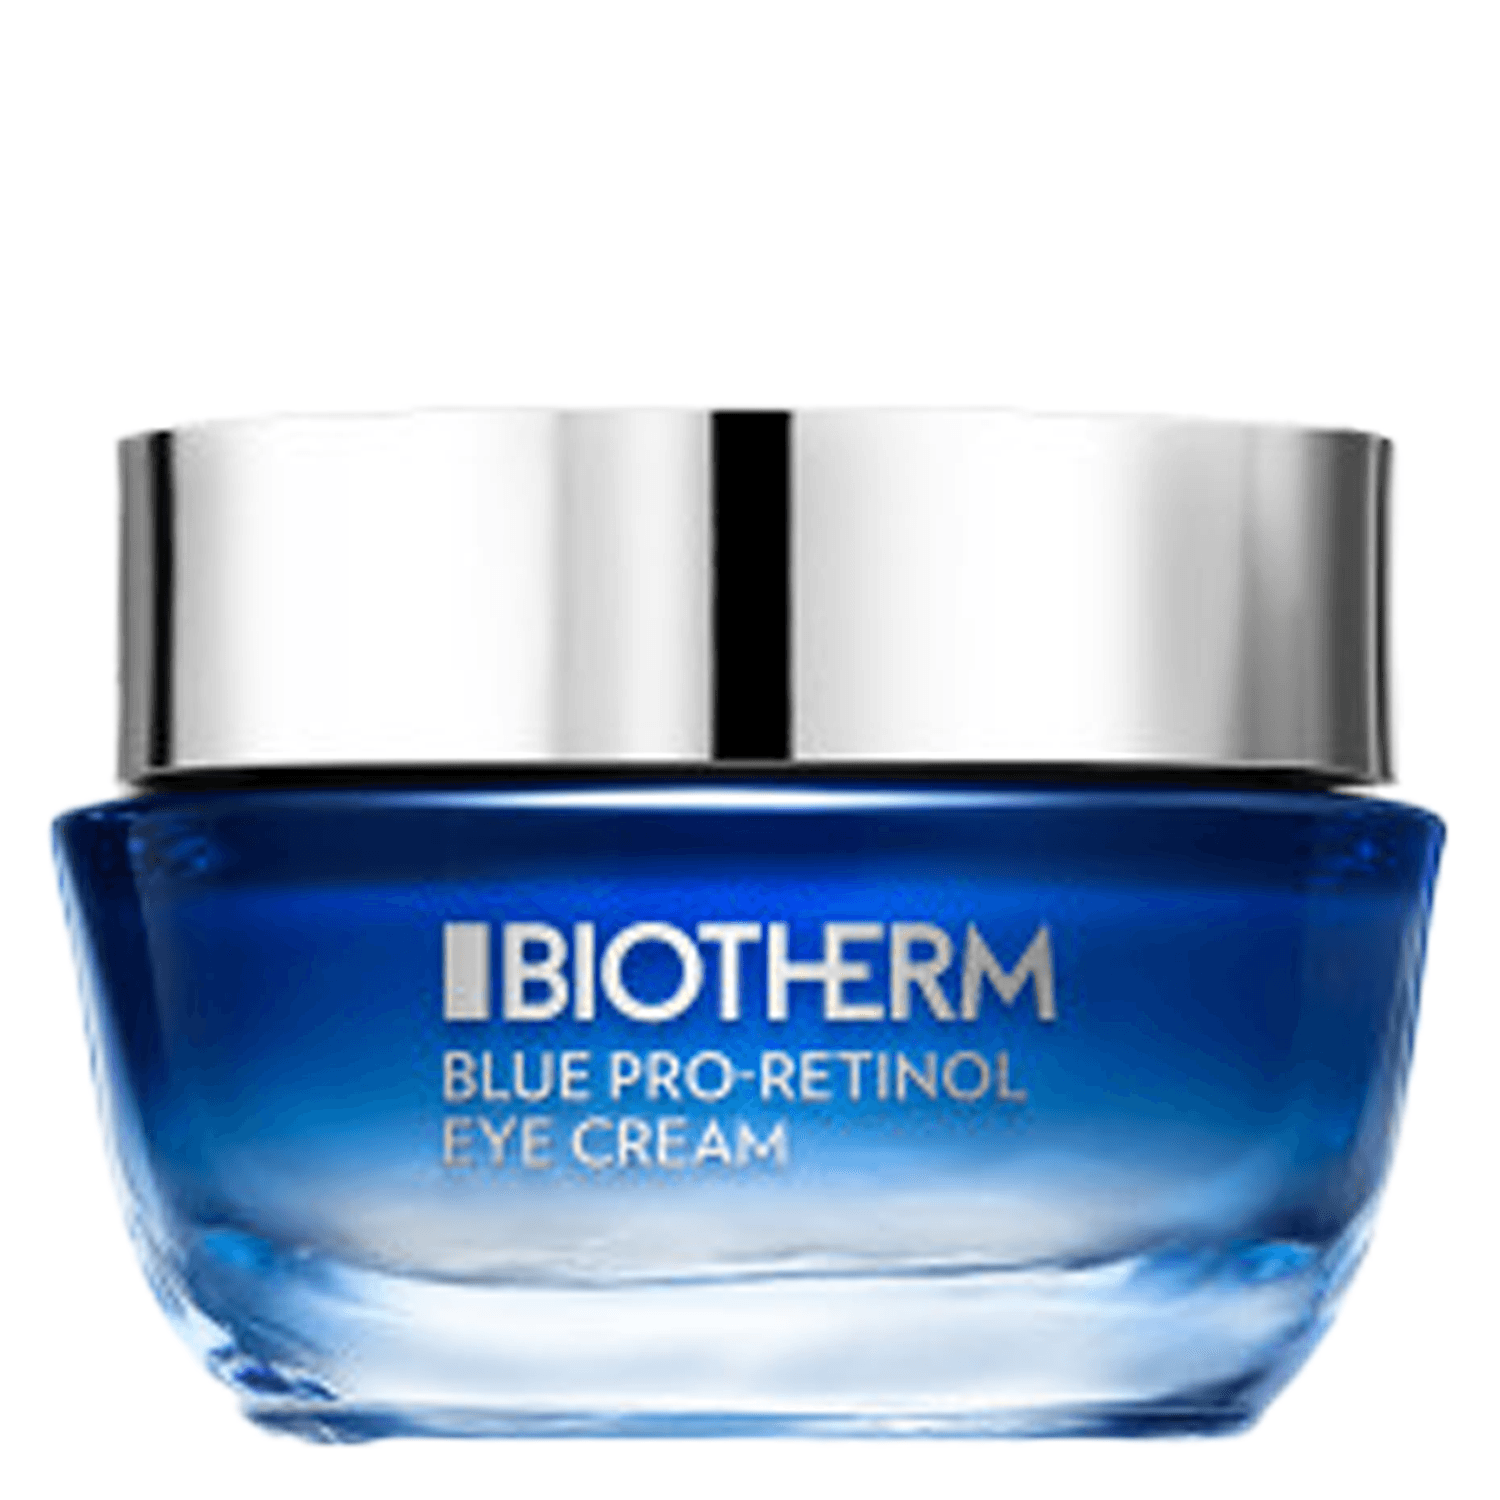 Produktbild von Blue Therapy - Pro-Retinol Eye Cream